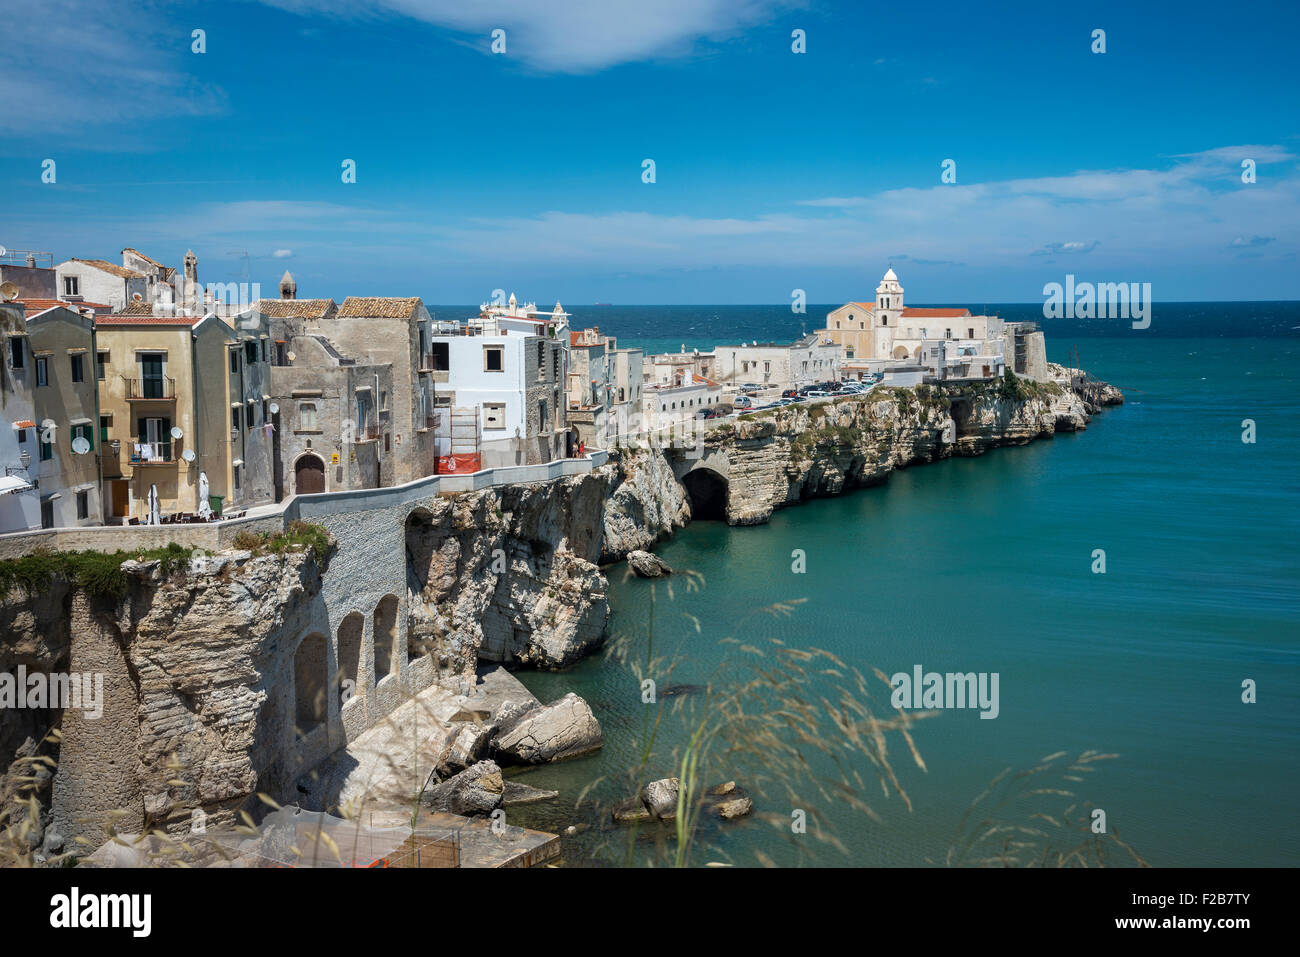 El casco antiguo de la ciudad de Vieste en la península de Gargano, en la región de Apulia, en el sur de Italia Foto de stock